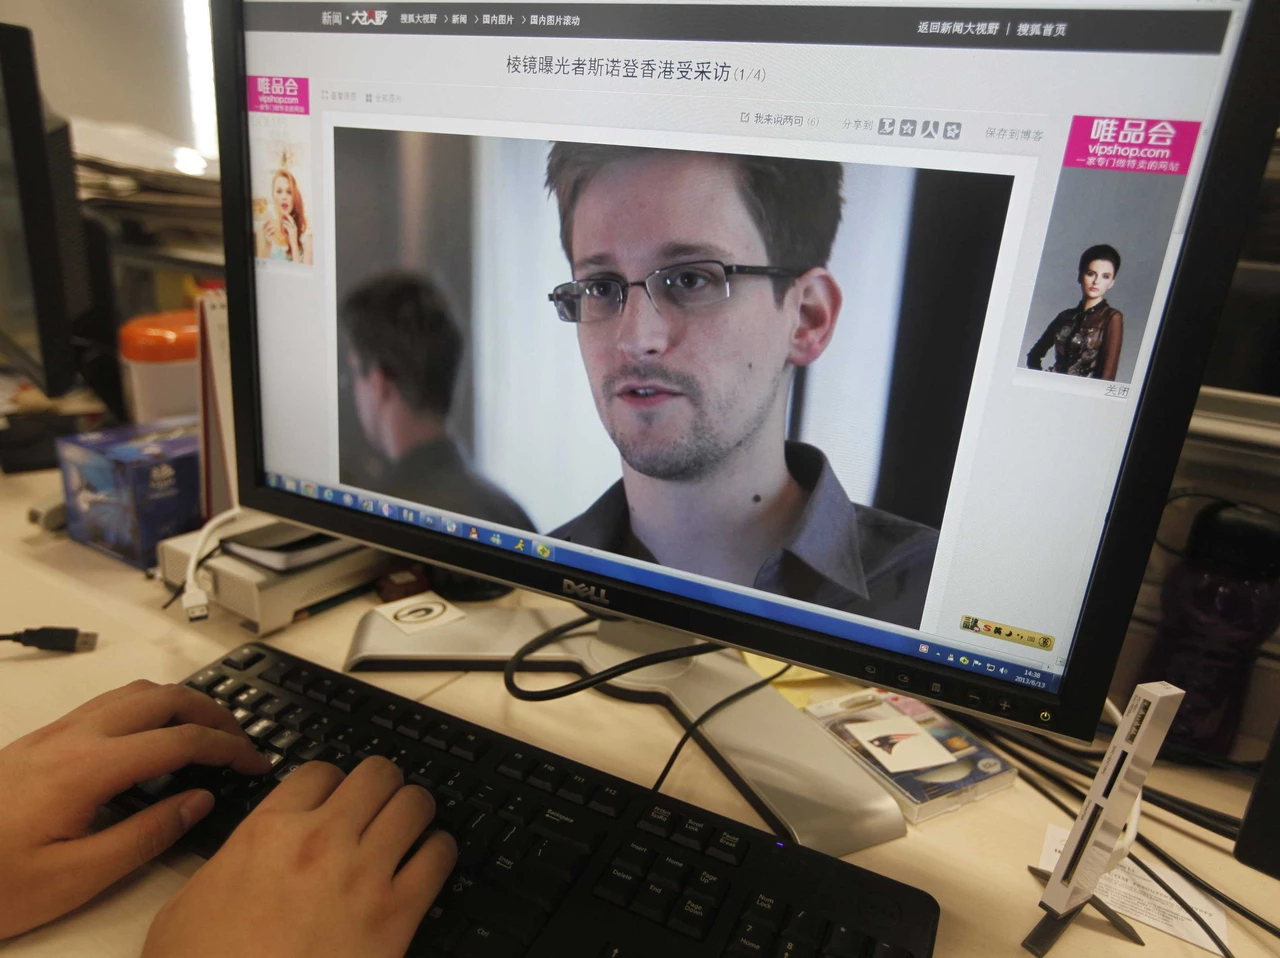 Por caso Snowden, resurge en empresas el temor a los "empleados infieles" que se apropian de información